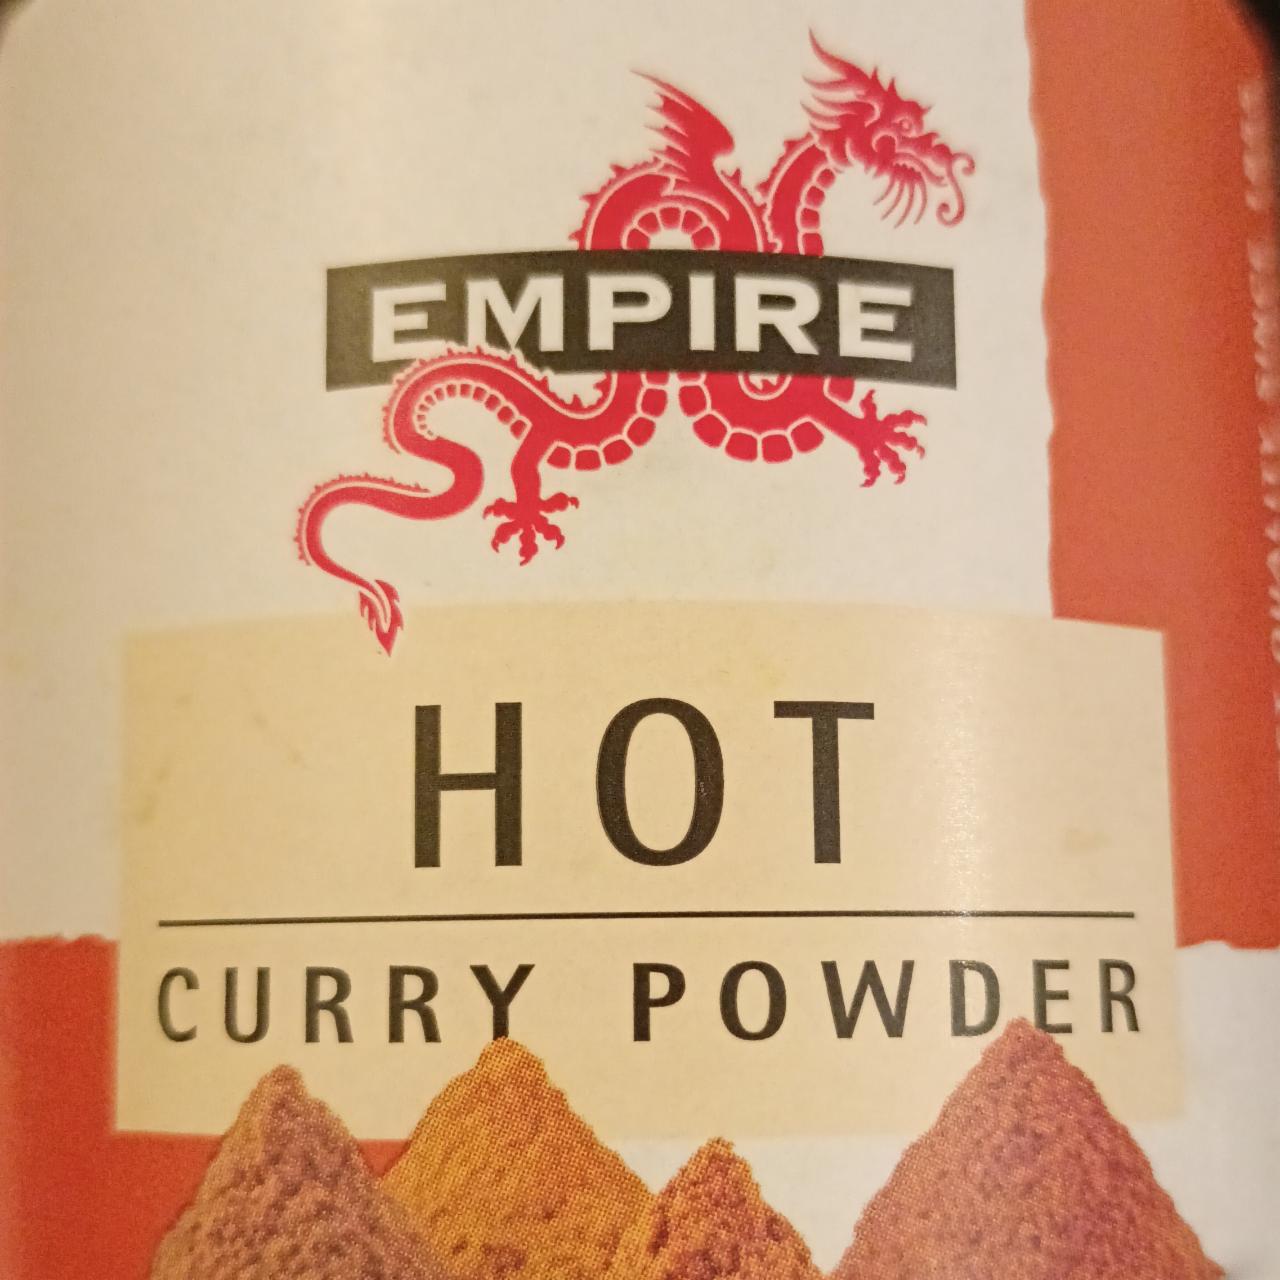 Fotografie - Hot curry powder Empire